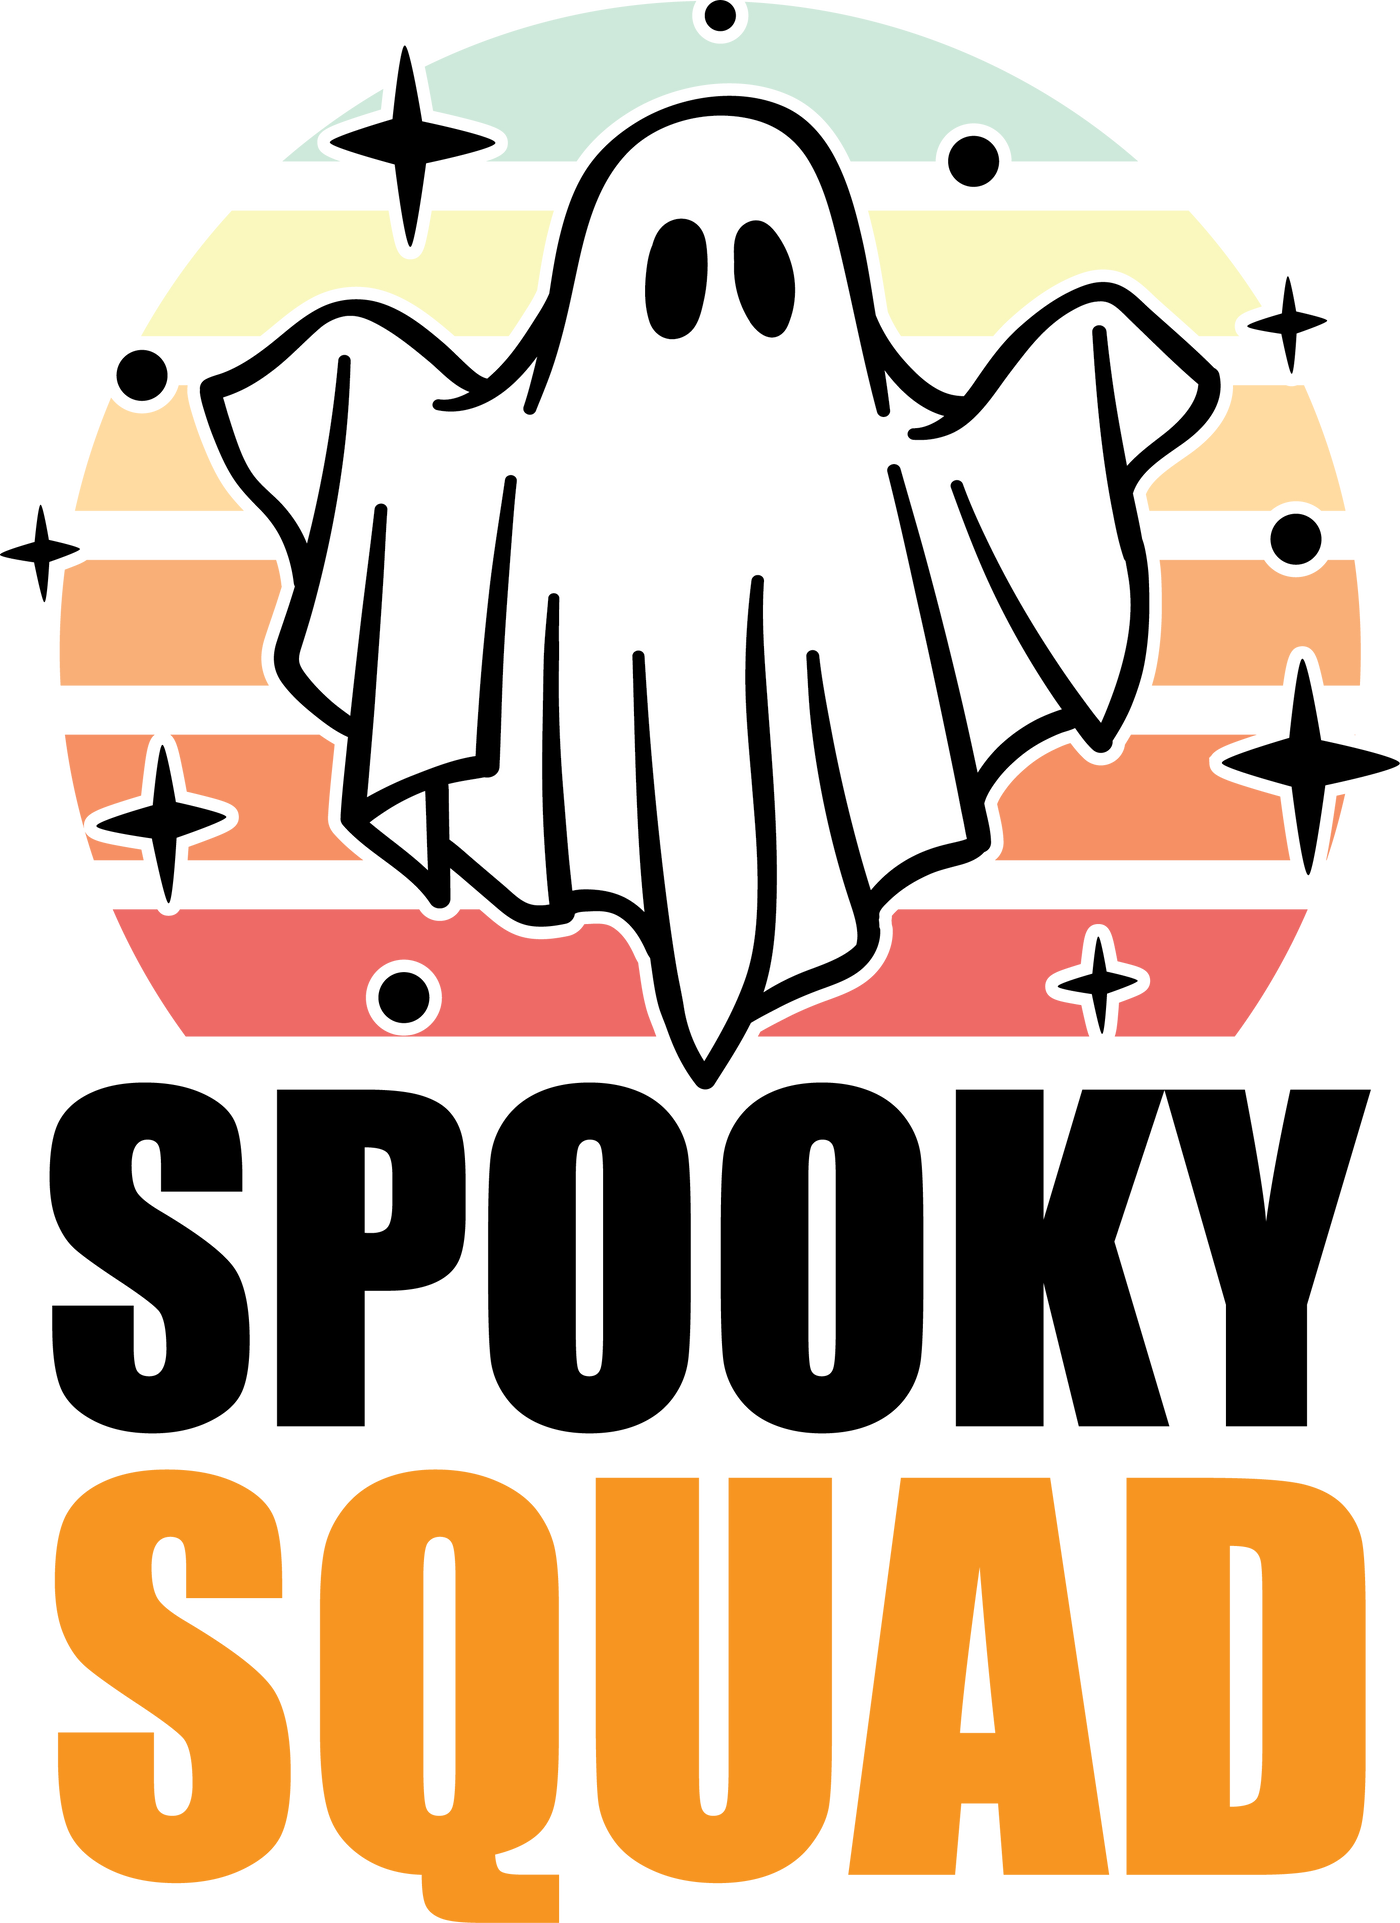 Spooky Squad Crewneck